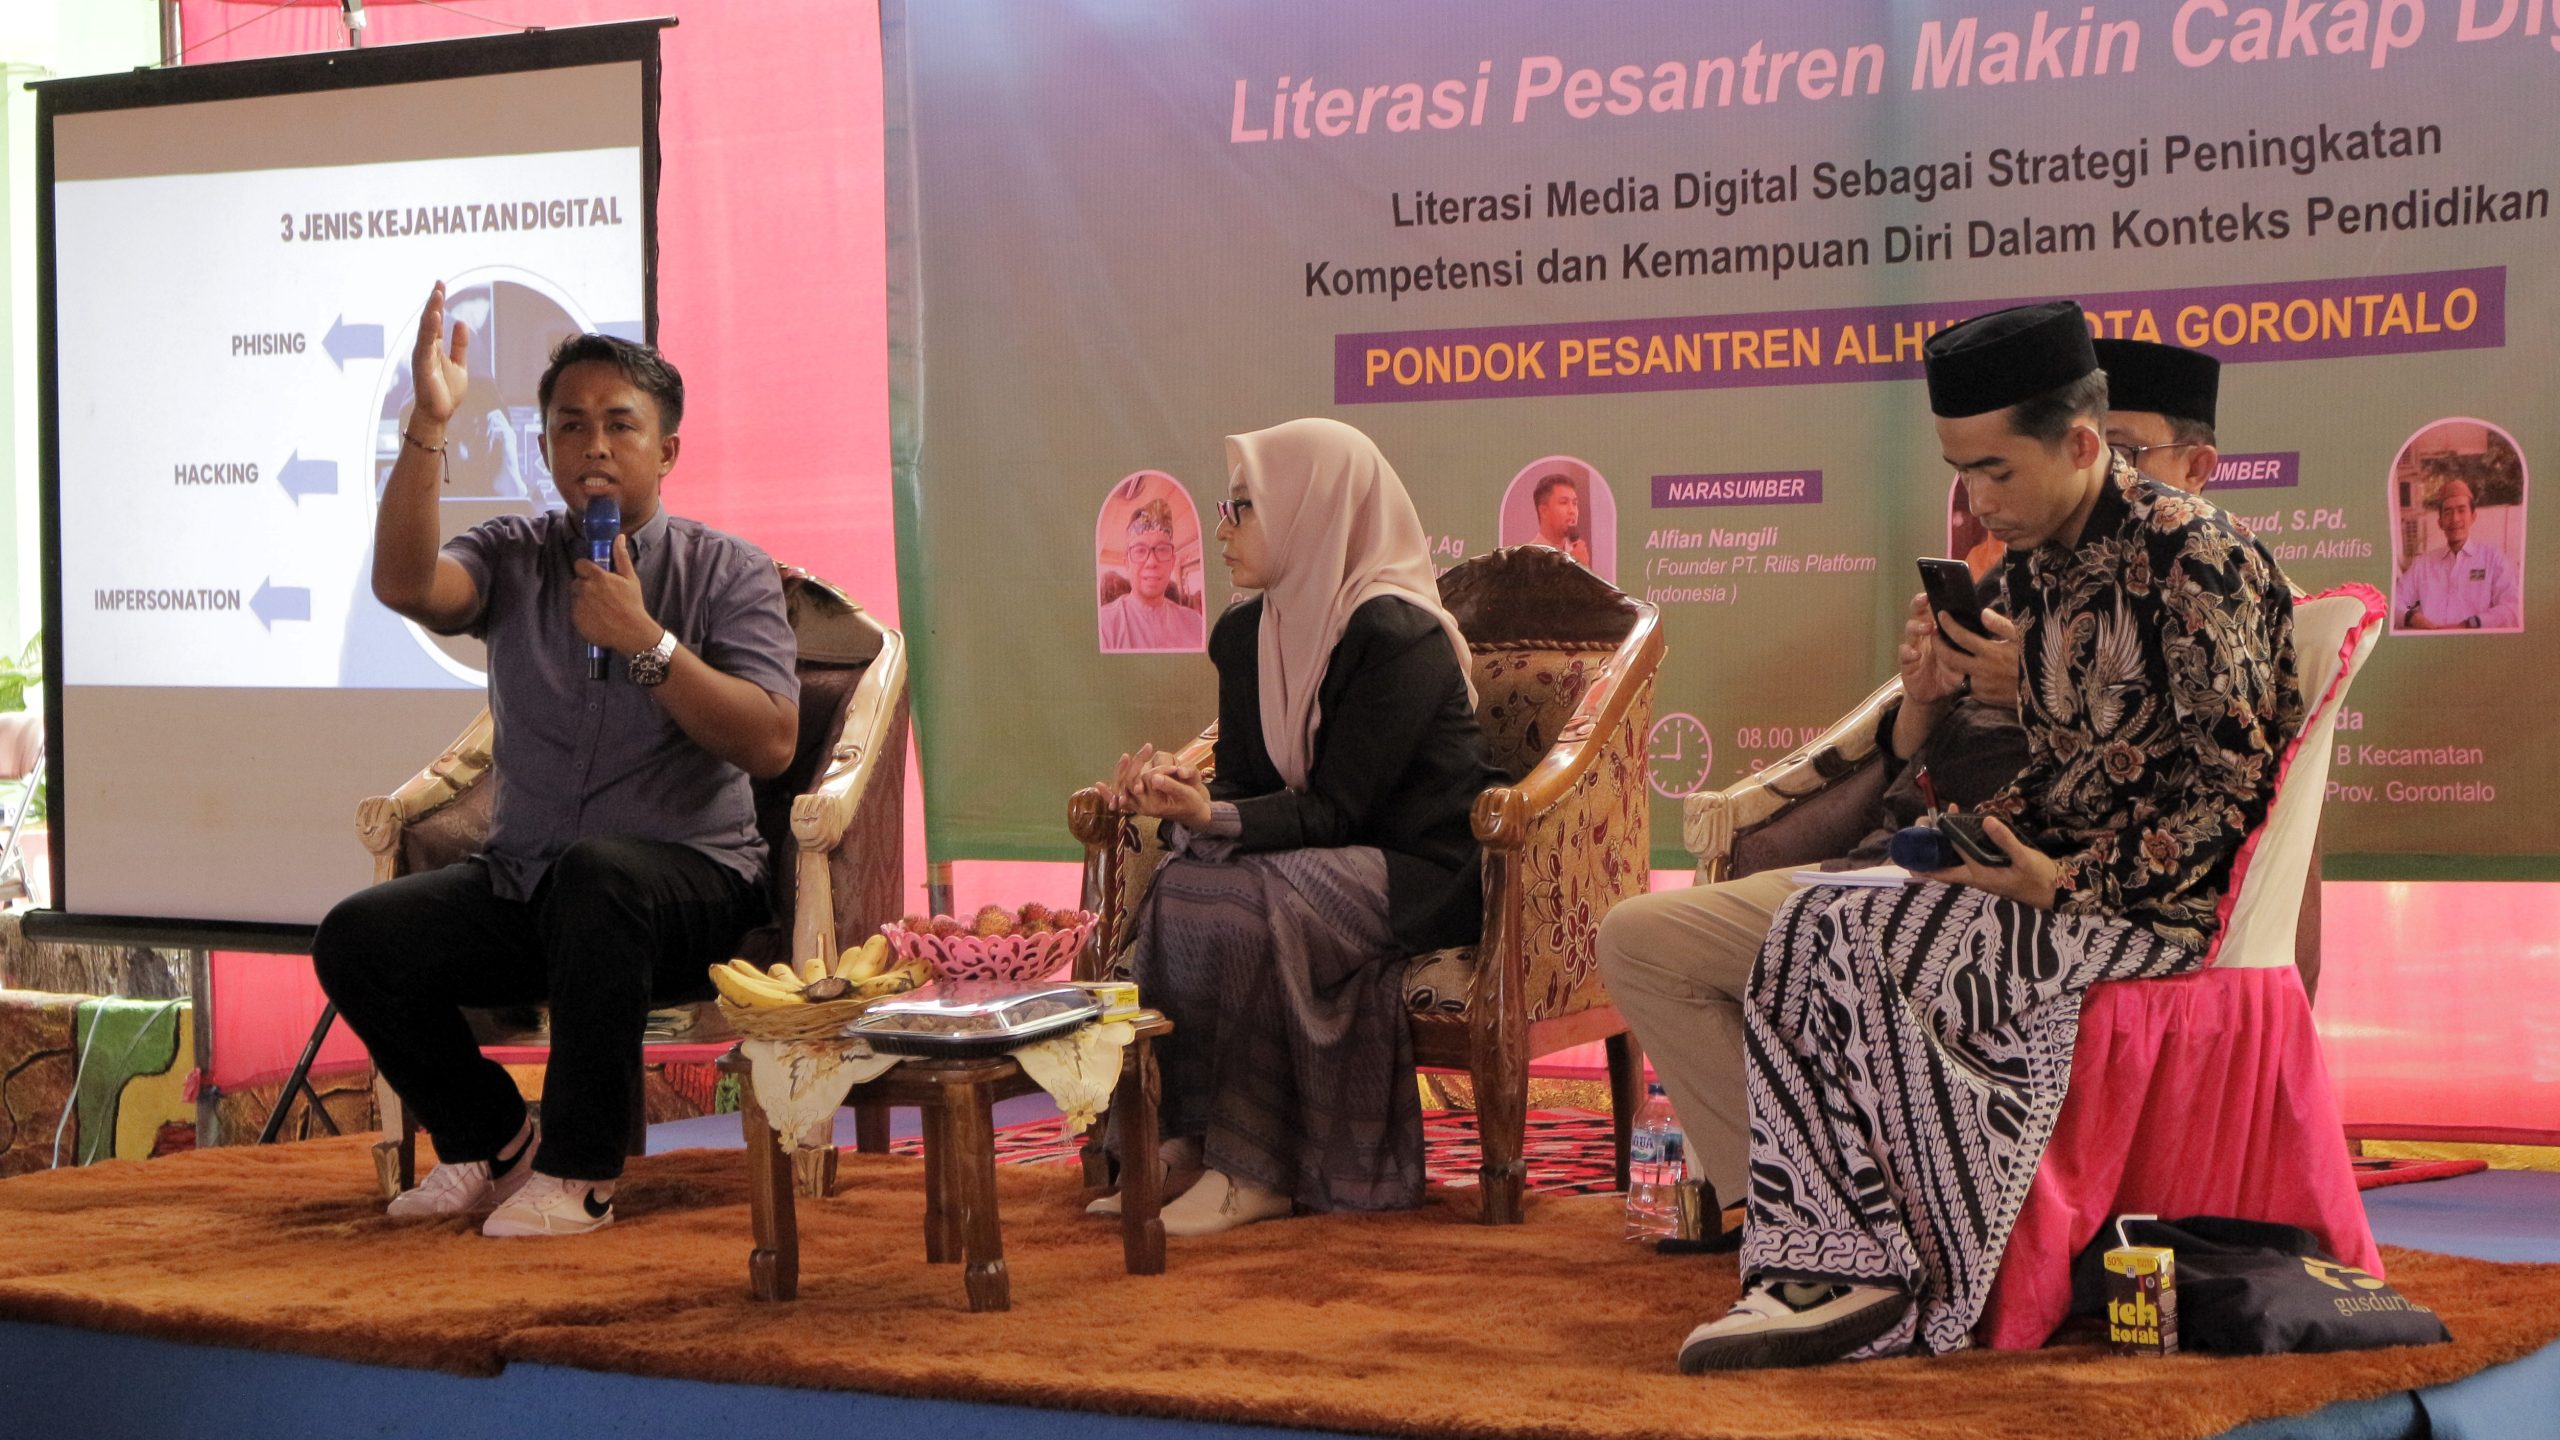 Talkshow: Literasi Pesantren Makin Cakap Digital di Pondok Pesantren Alhuda Kota Gorontalo